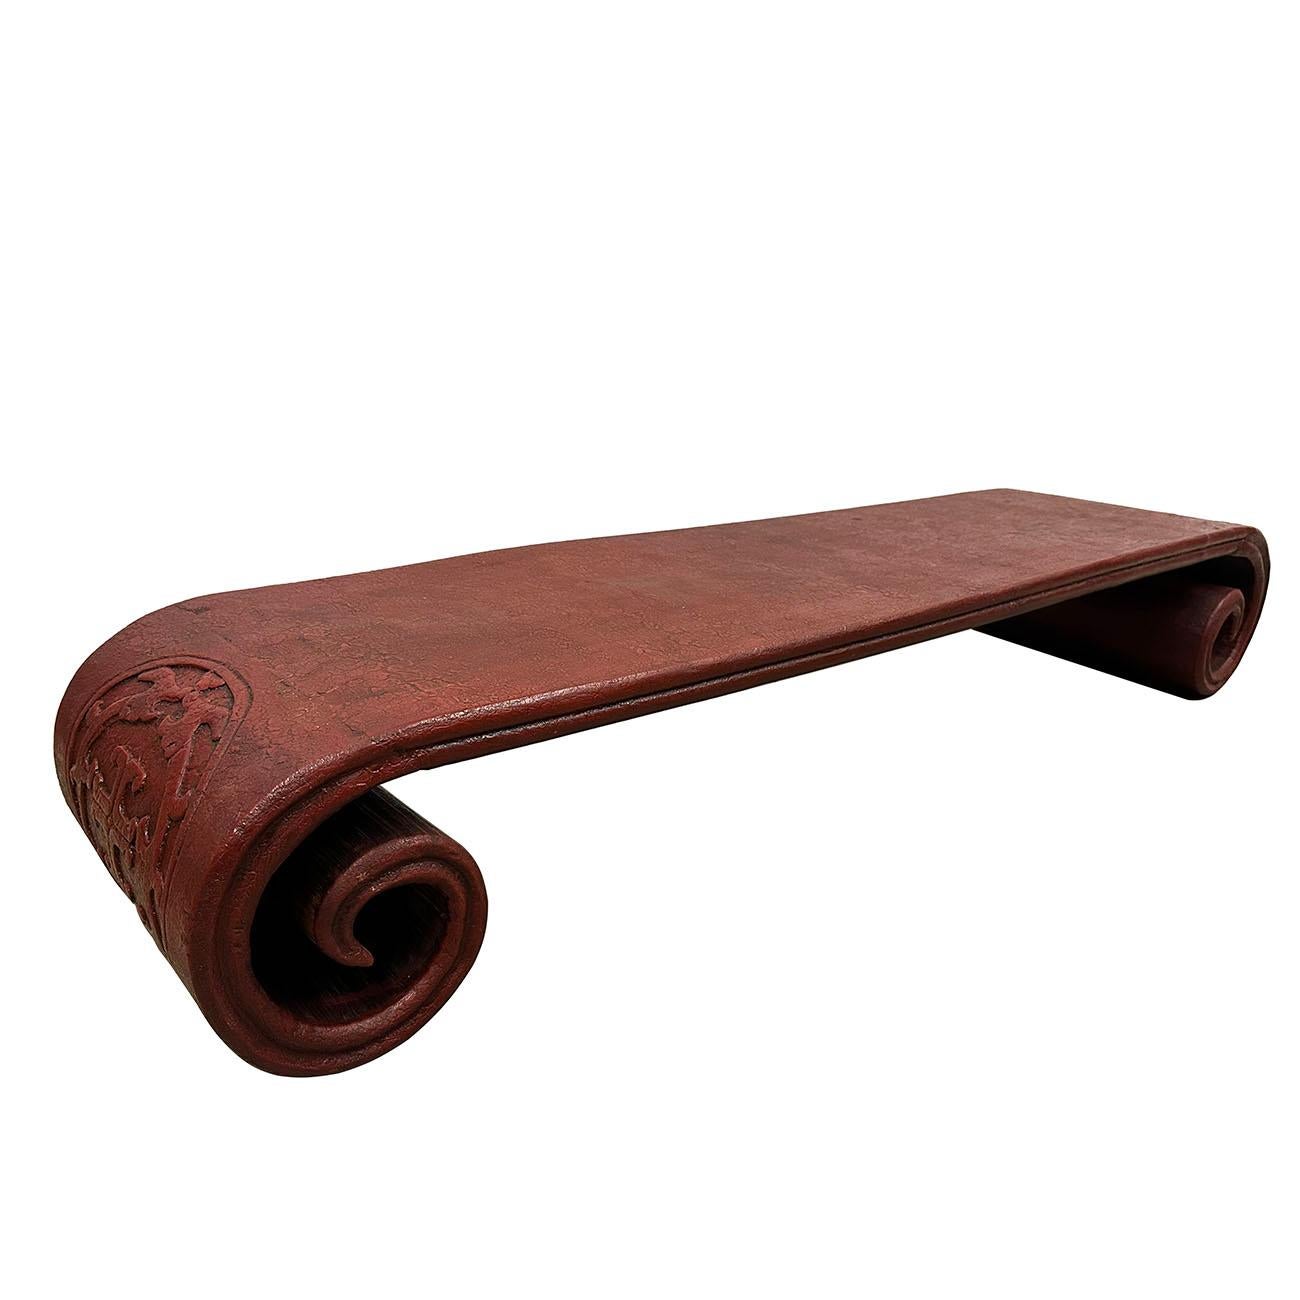 Cette table basse a été fabriquée en orme massif avec une finition laquée rouge. Il a des côtés sculptés en forme de volutes. Tous les produits sont fabriqués et peints à la main. Il est lourd et robuste, plein de patine. Regardez les photos, vous